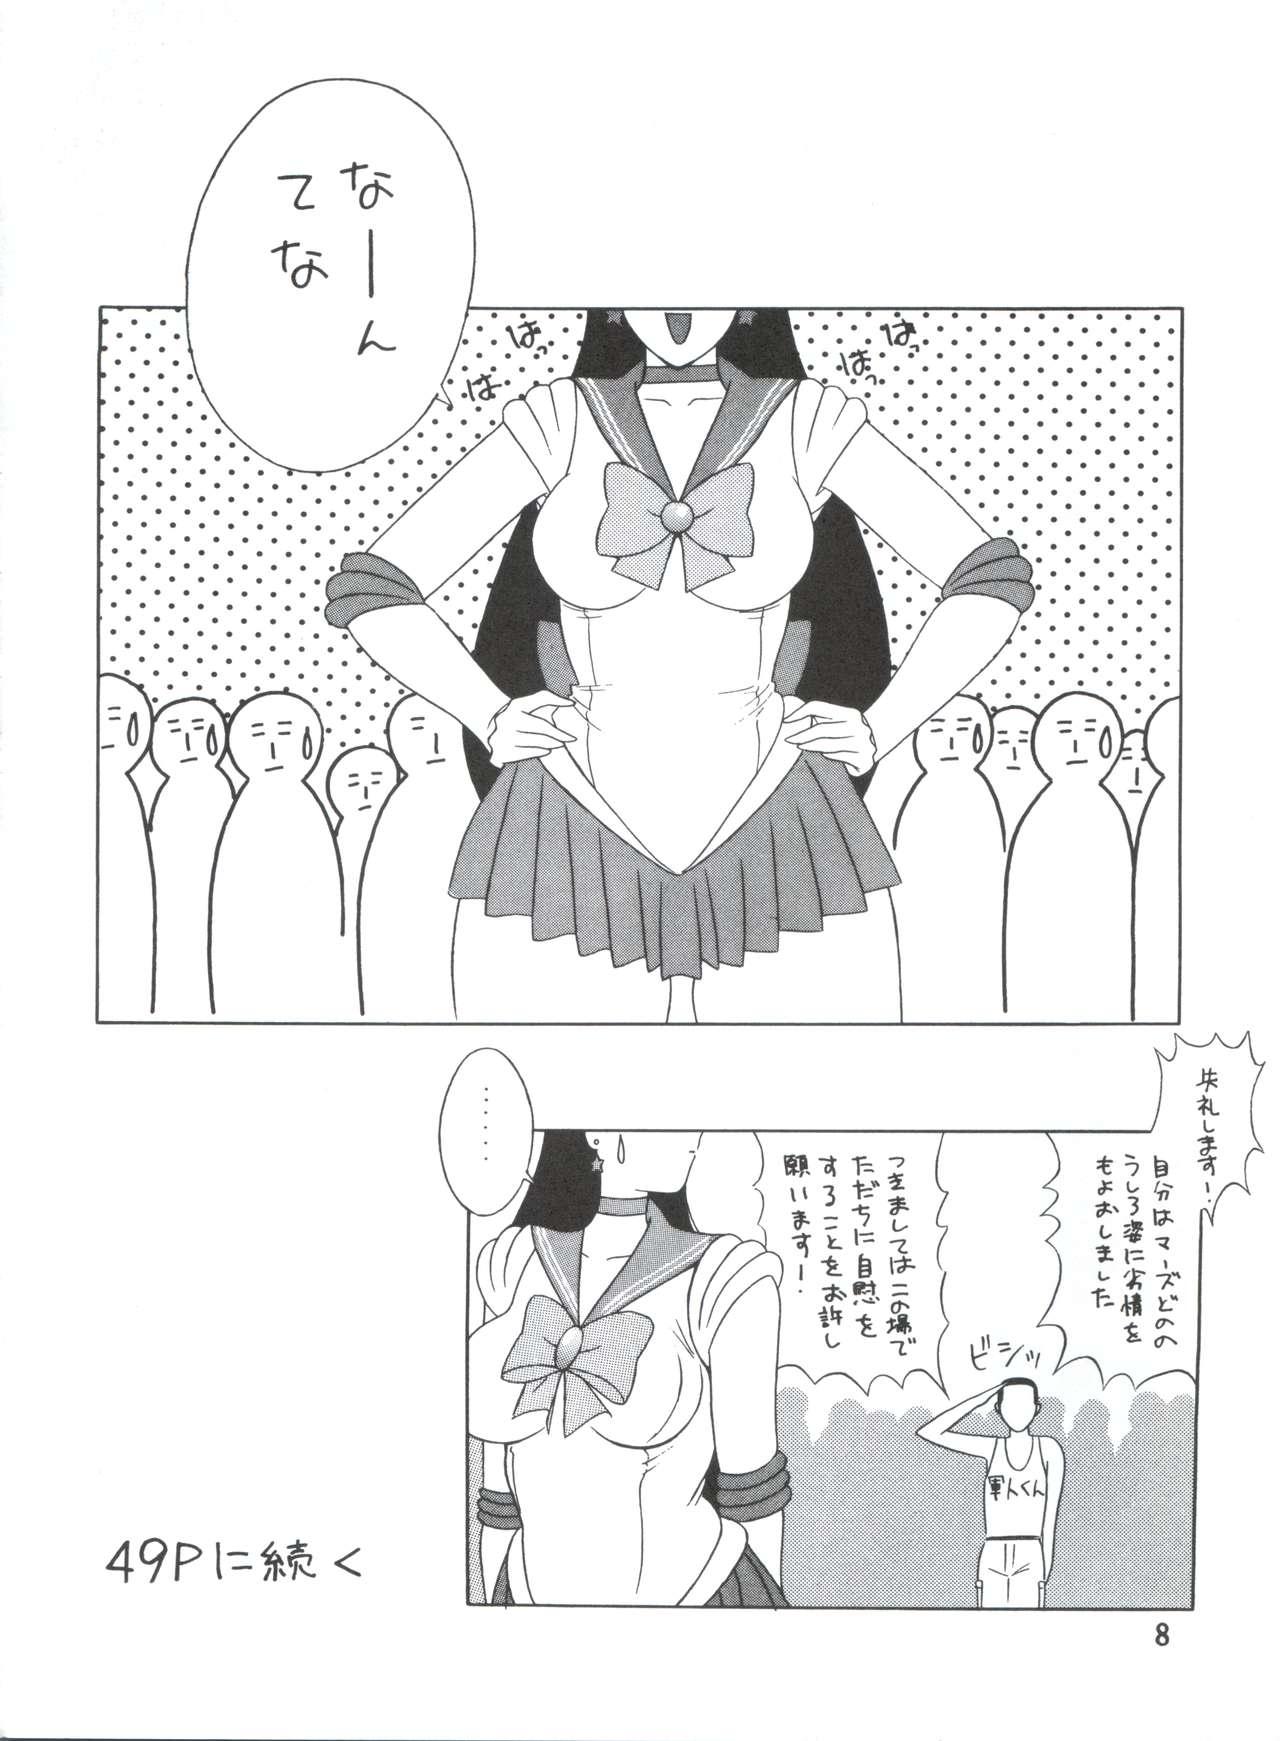 Mature Voice of Mars - Sailor moon Urusei yatsura Dirty pair Maison ikkoku Amateurs - Page 7